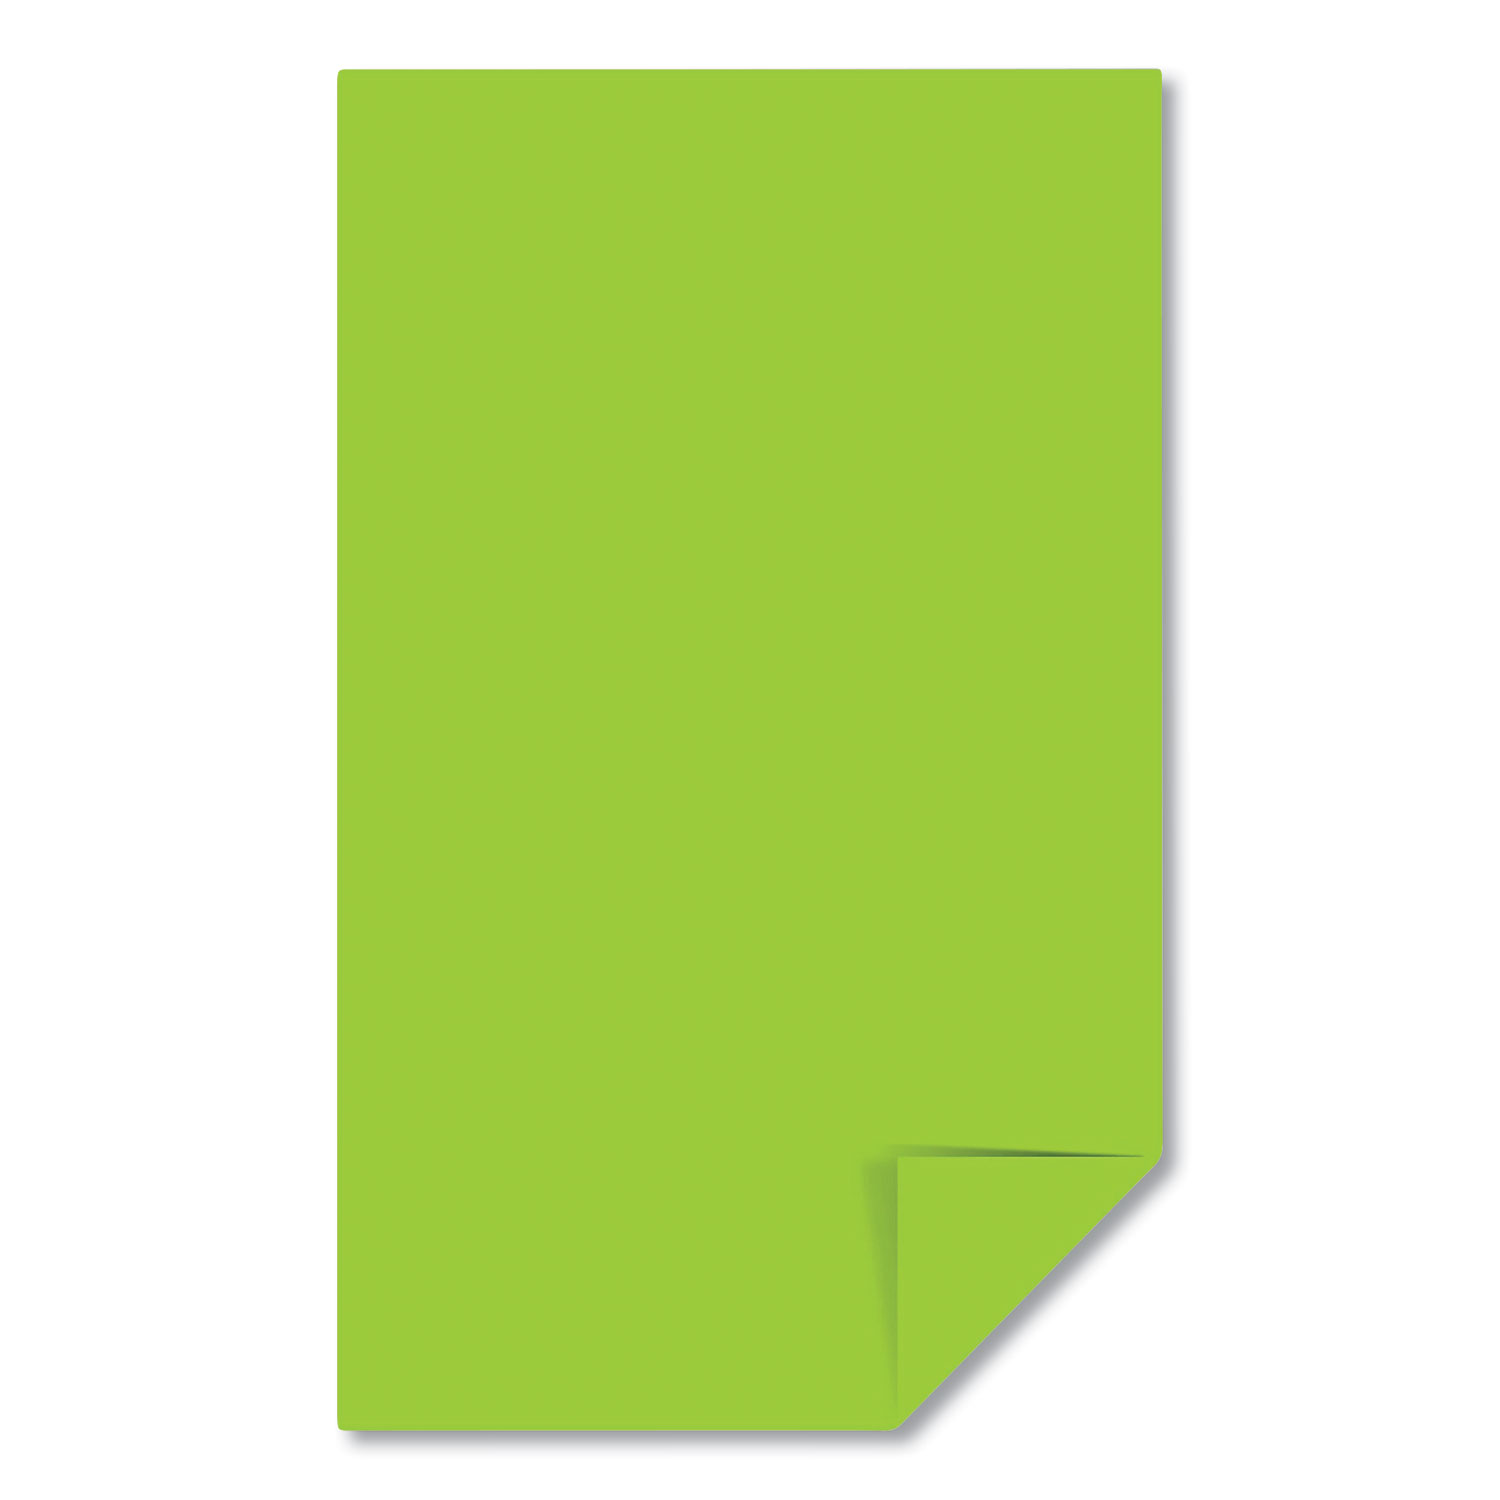 Astrobrights® Color Paper, 24 lb, 8.5 x 14, Terra Green, 500/Ream